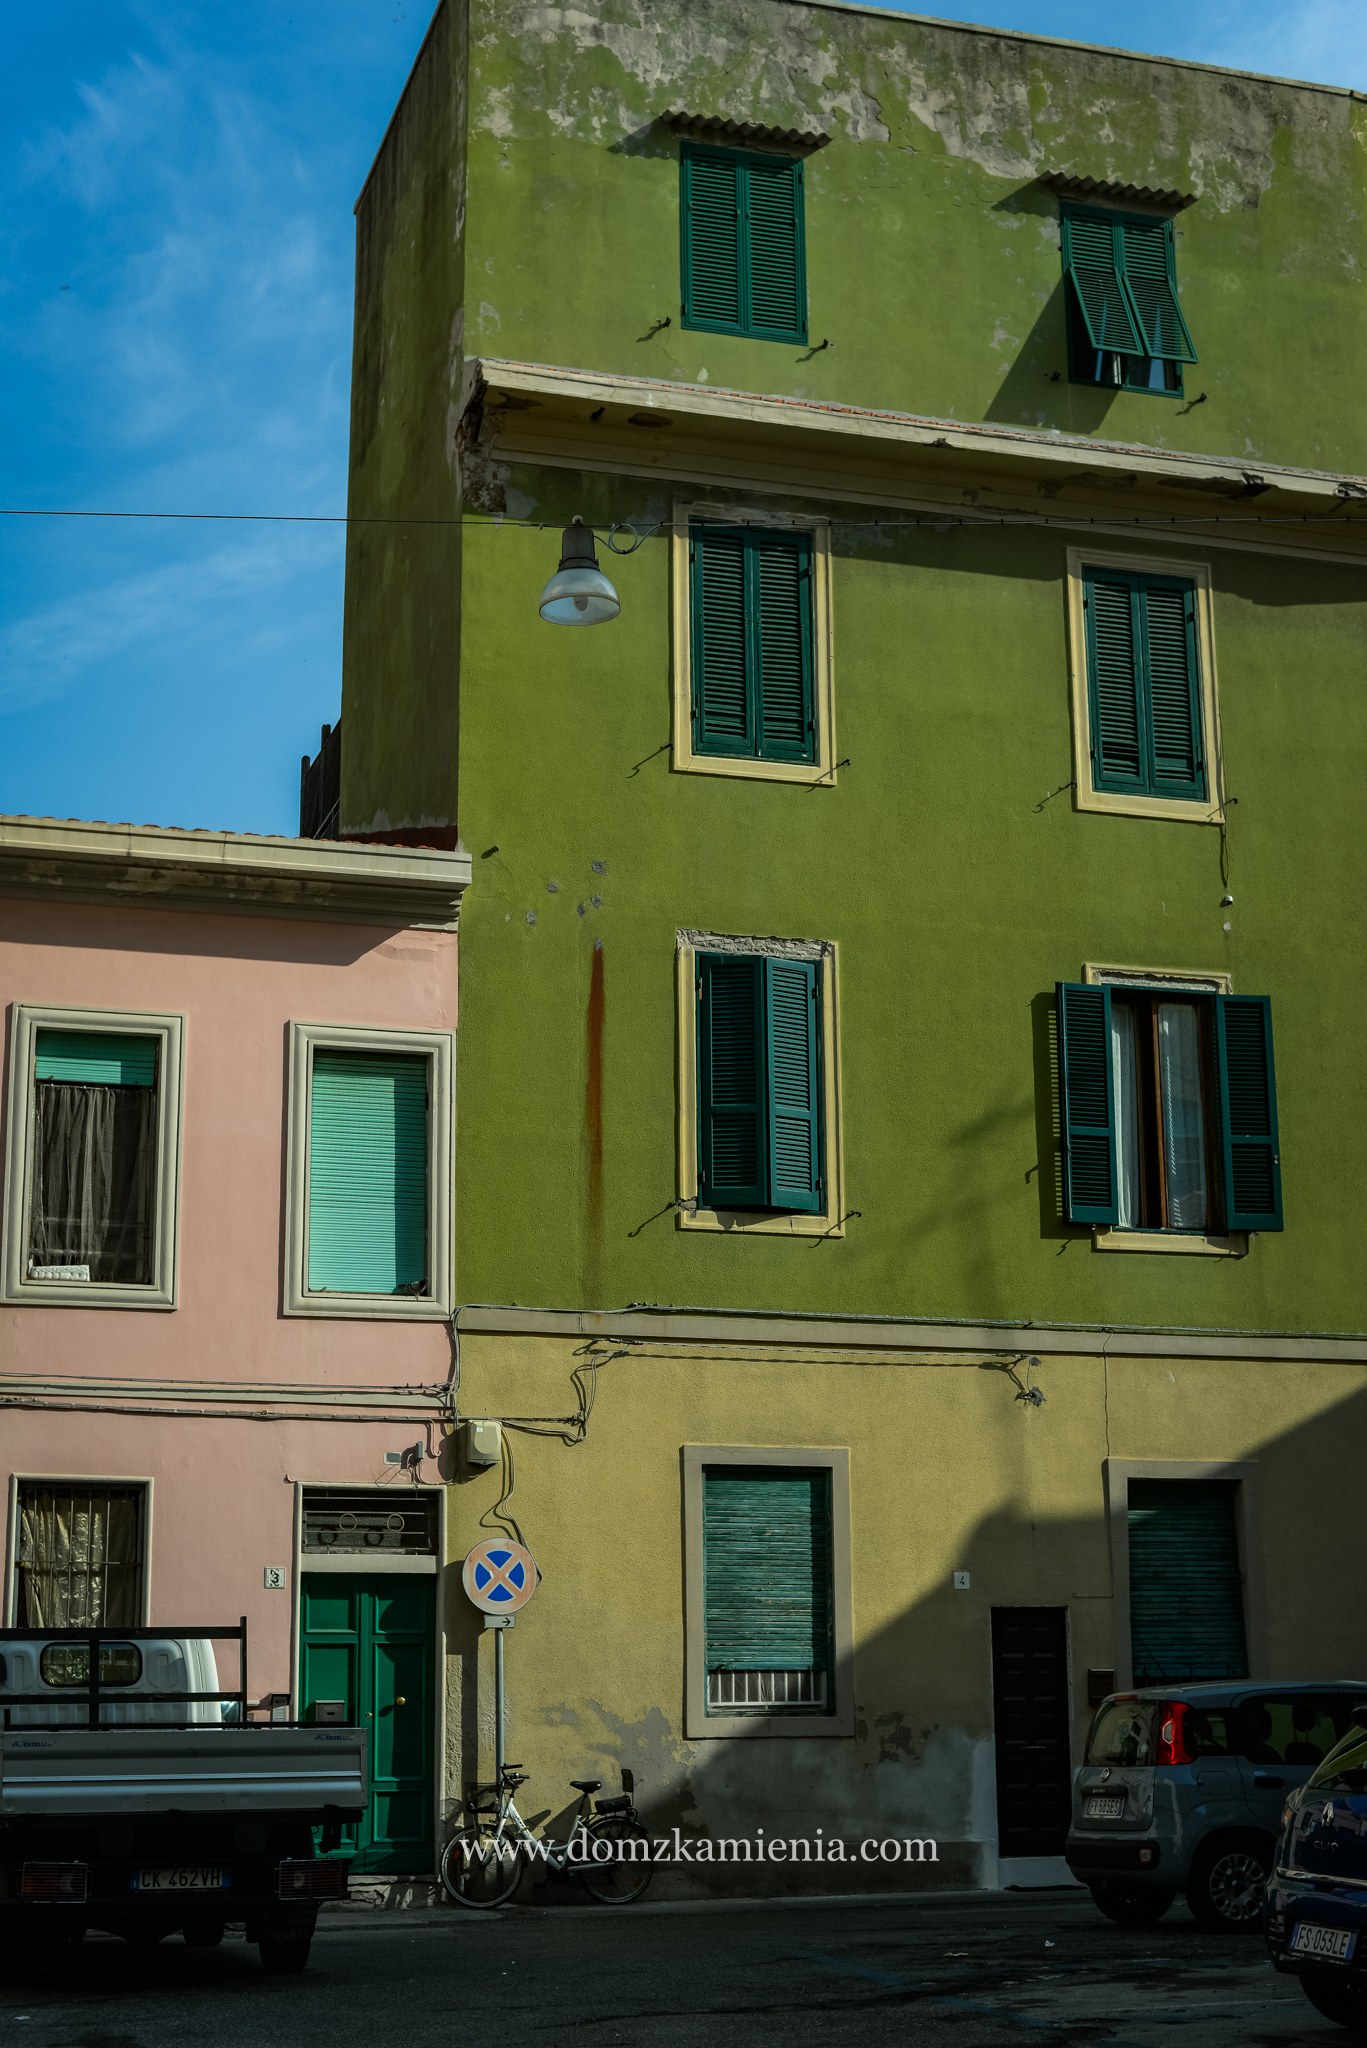 Livorno - dlaczego warto je odwiedzić i co zobaczyć.